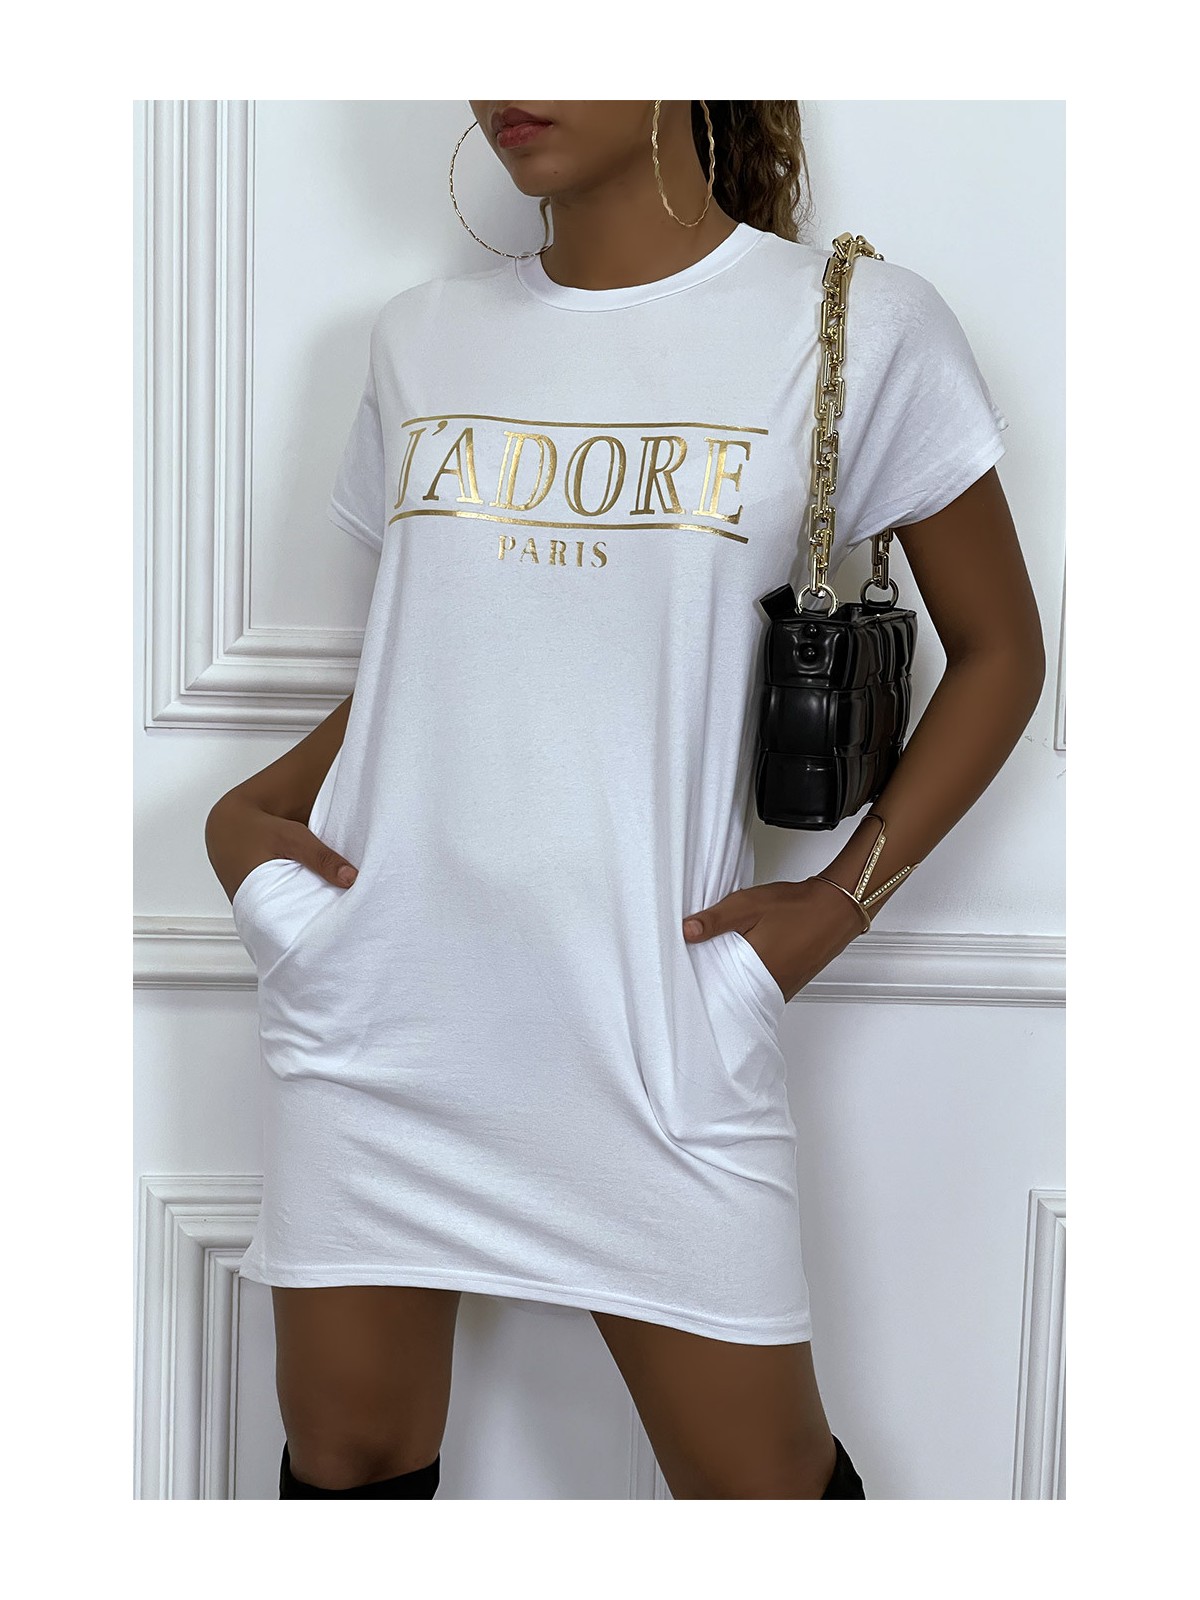 Robe T-shirt courte asymétrique blanc avec écriture doré "J'adore" et poches - 4